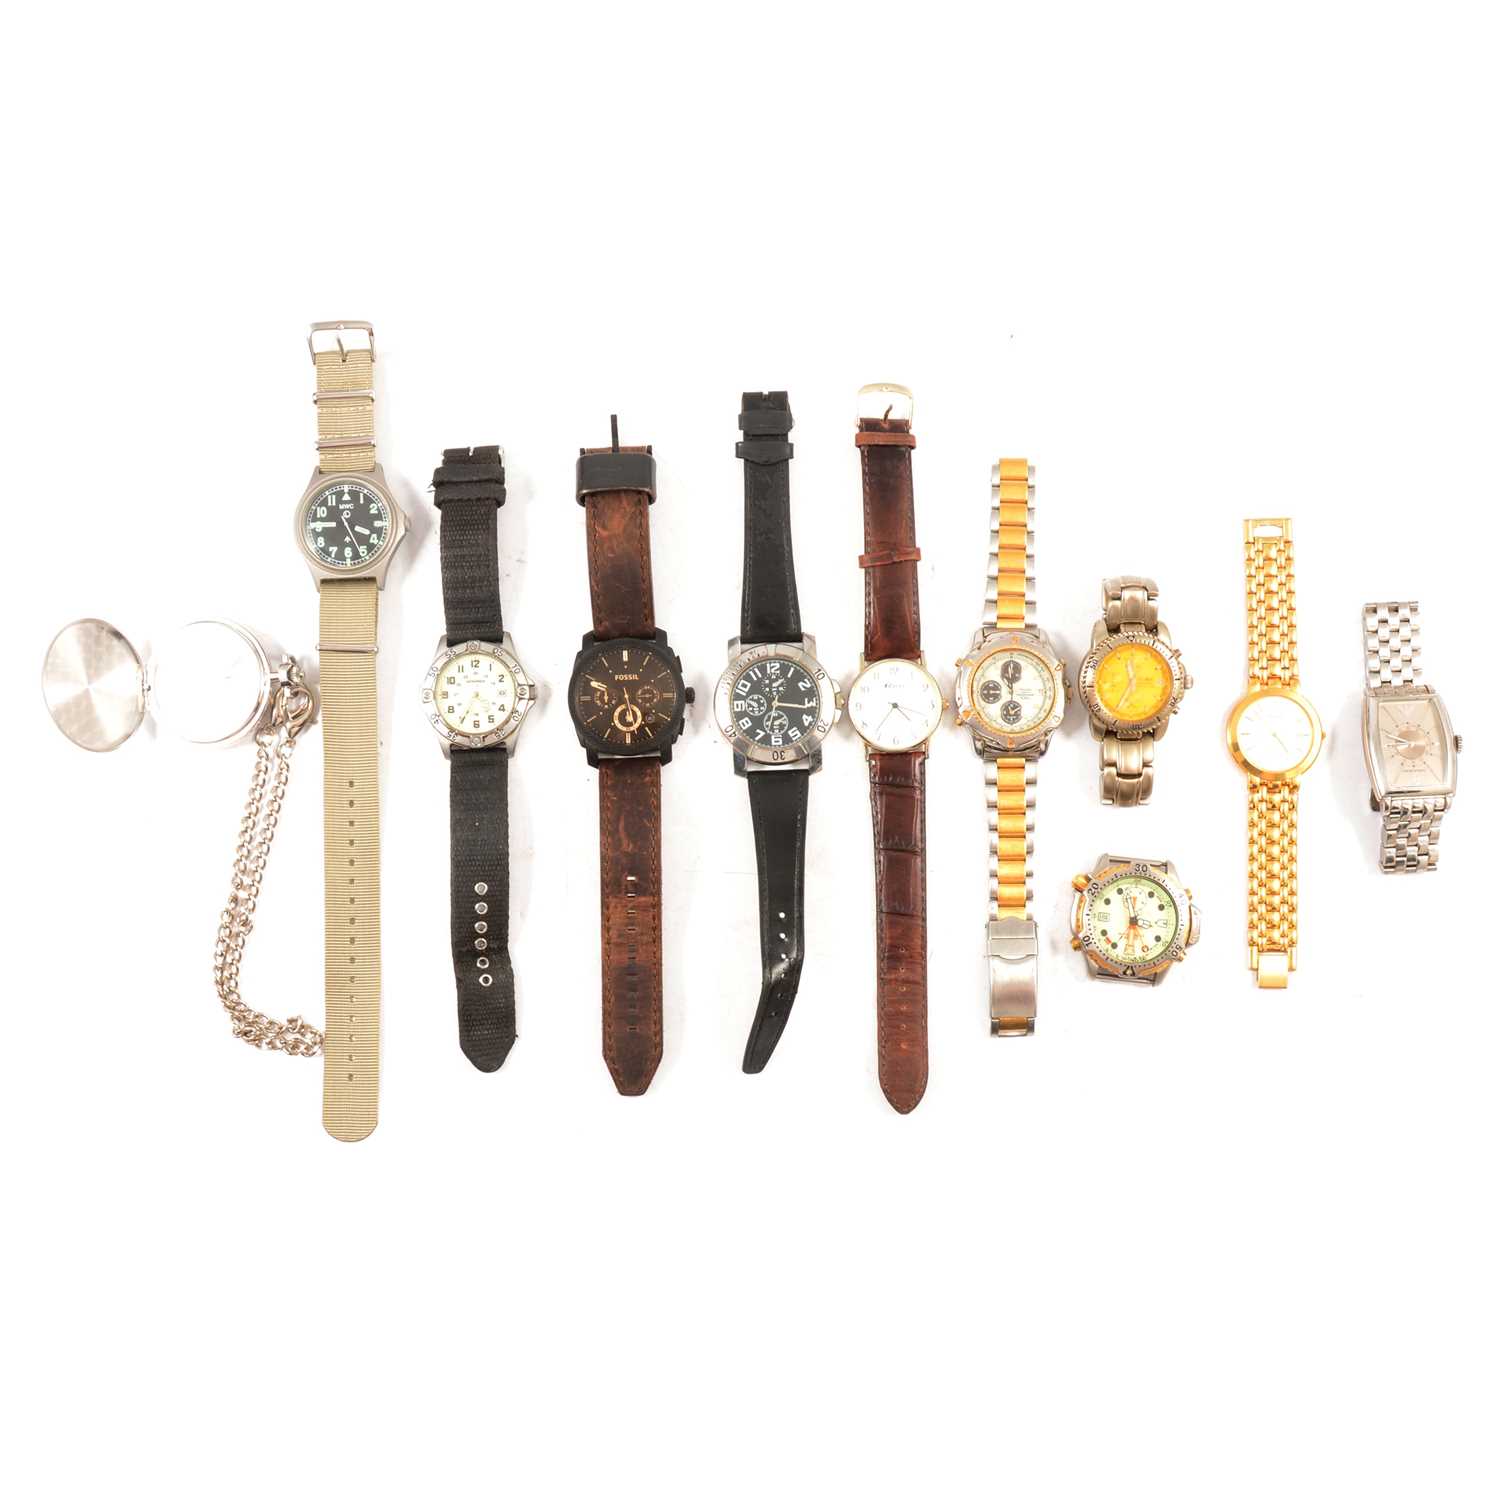 Lot 404 - Ten gentleman's fashion watches, Citizen, Pulsar, Sekonda, and a modern Tissot pocket watch.